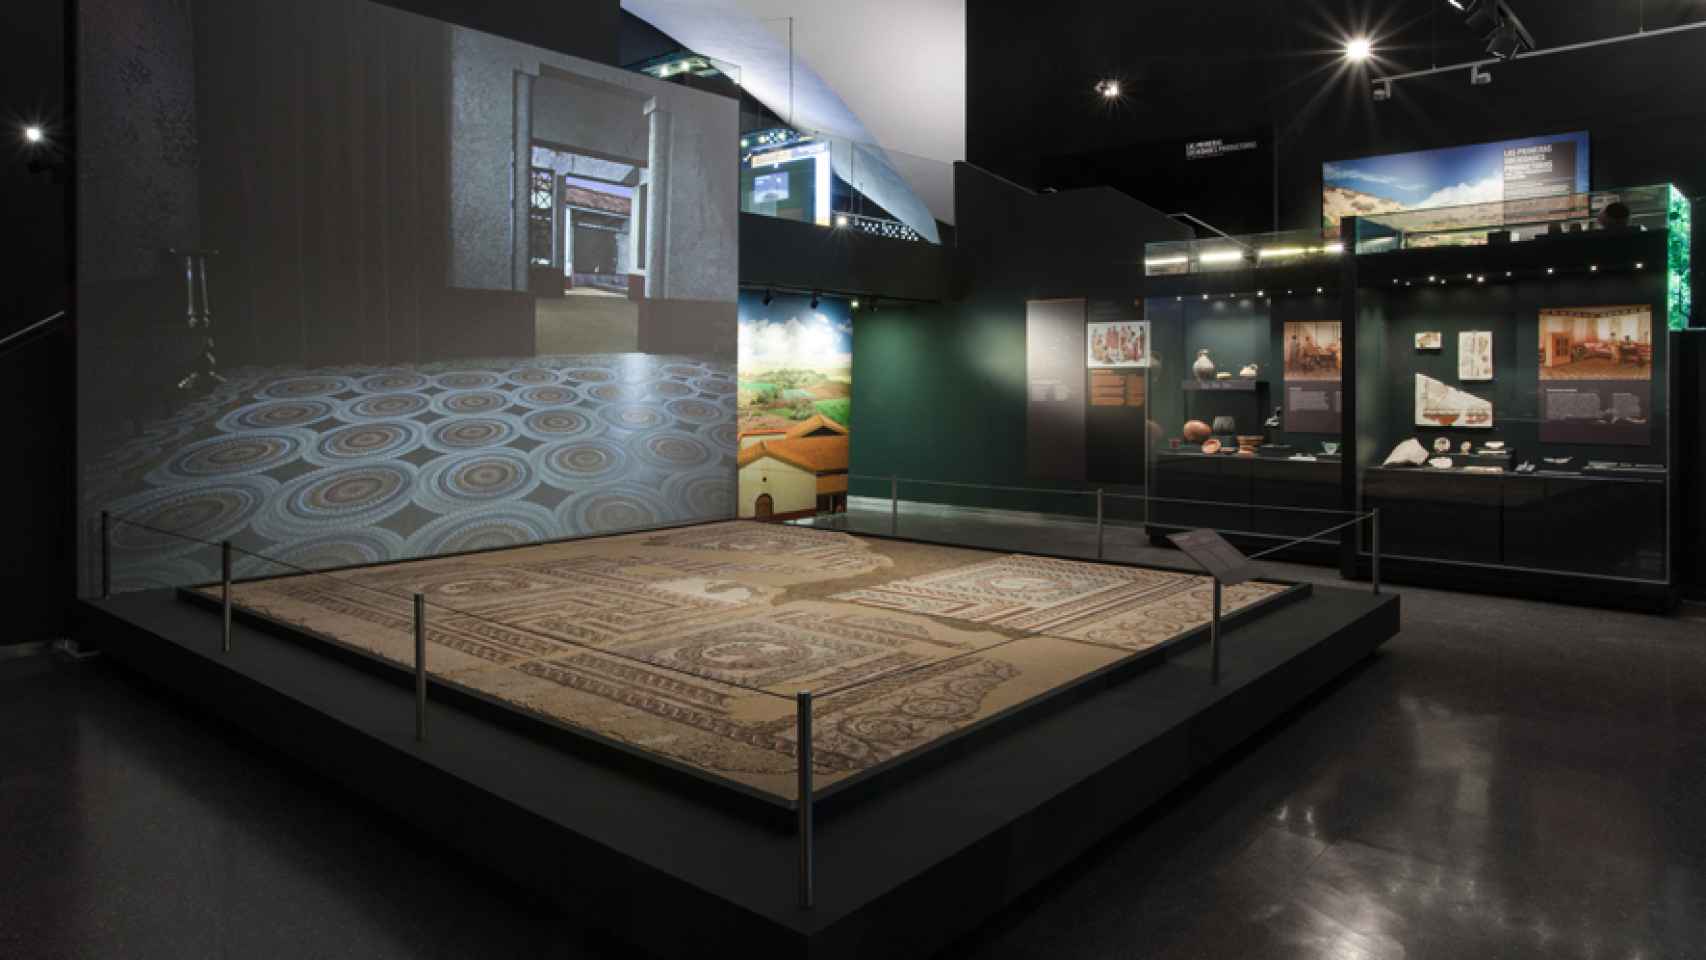 Vista del mosaico romano hallado en el yacimiento de Carabanchel, expuesto actualmente en el Museo de San Isidro.